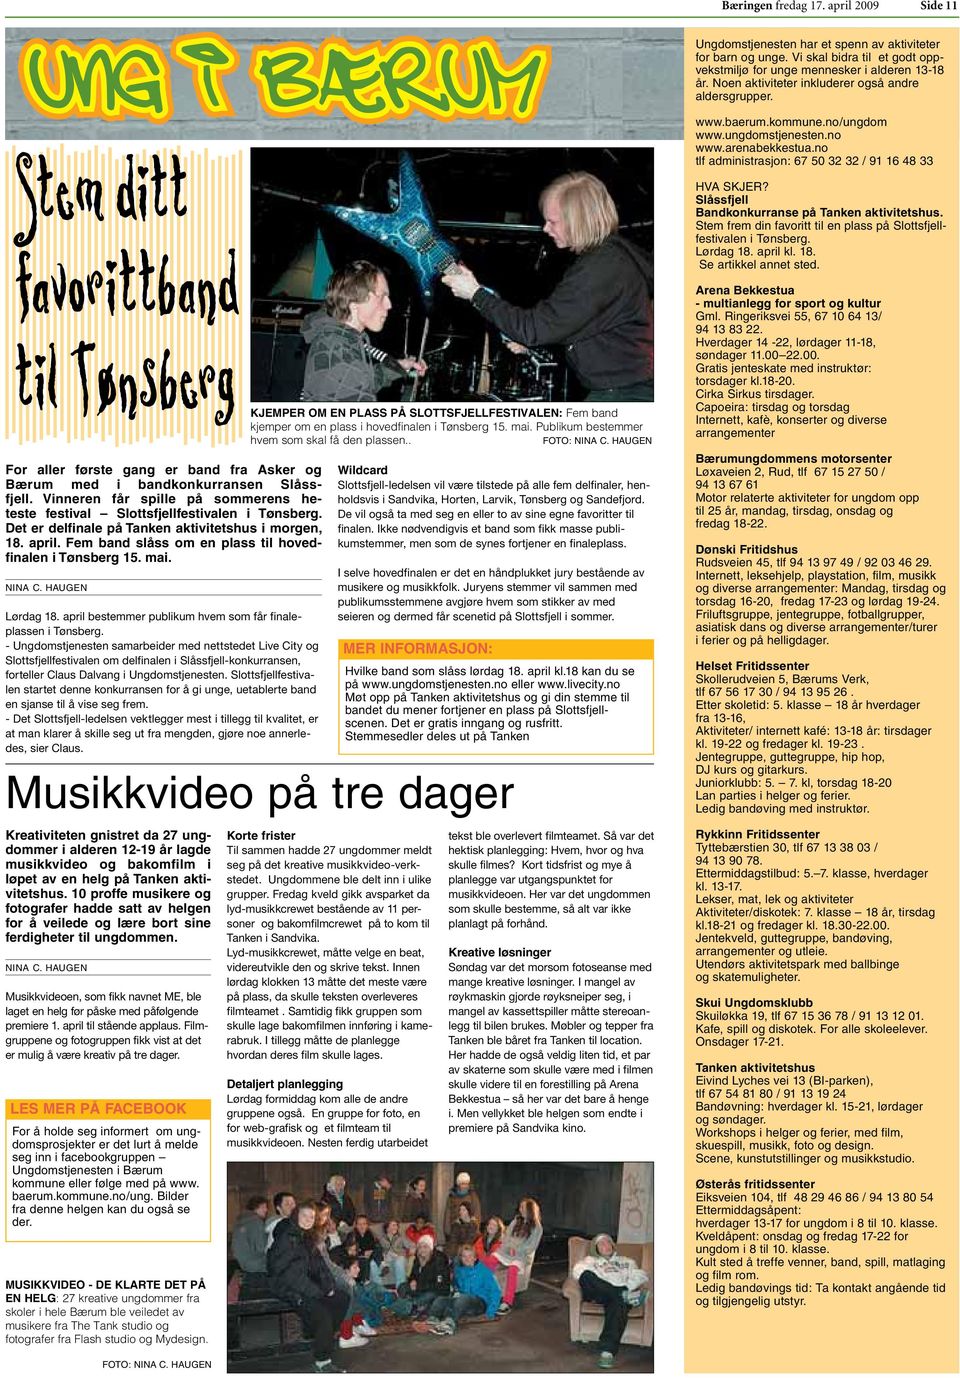 Vinneren får spille på sommerens heteste festival Slottsfjellfestivalen i Tønsberg. Det er delfinale på Tanken aktivitetshus i morgen, 18. april.